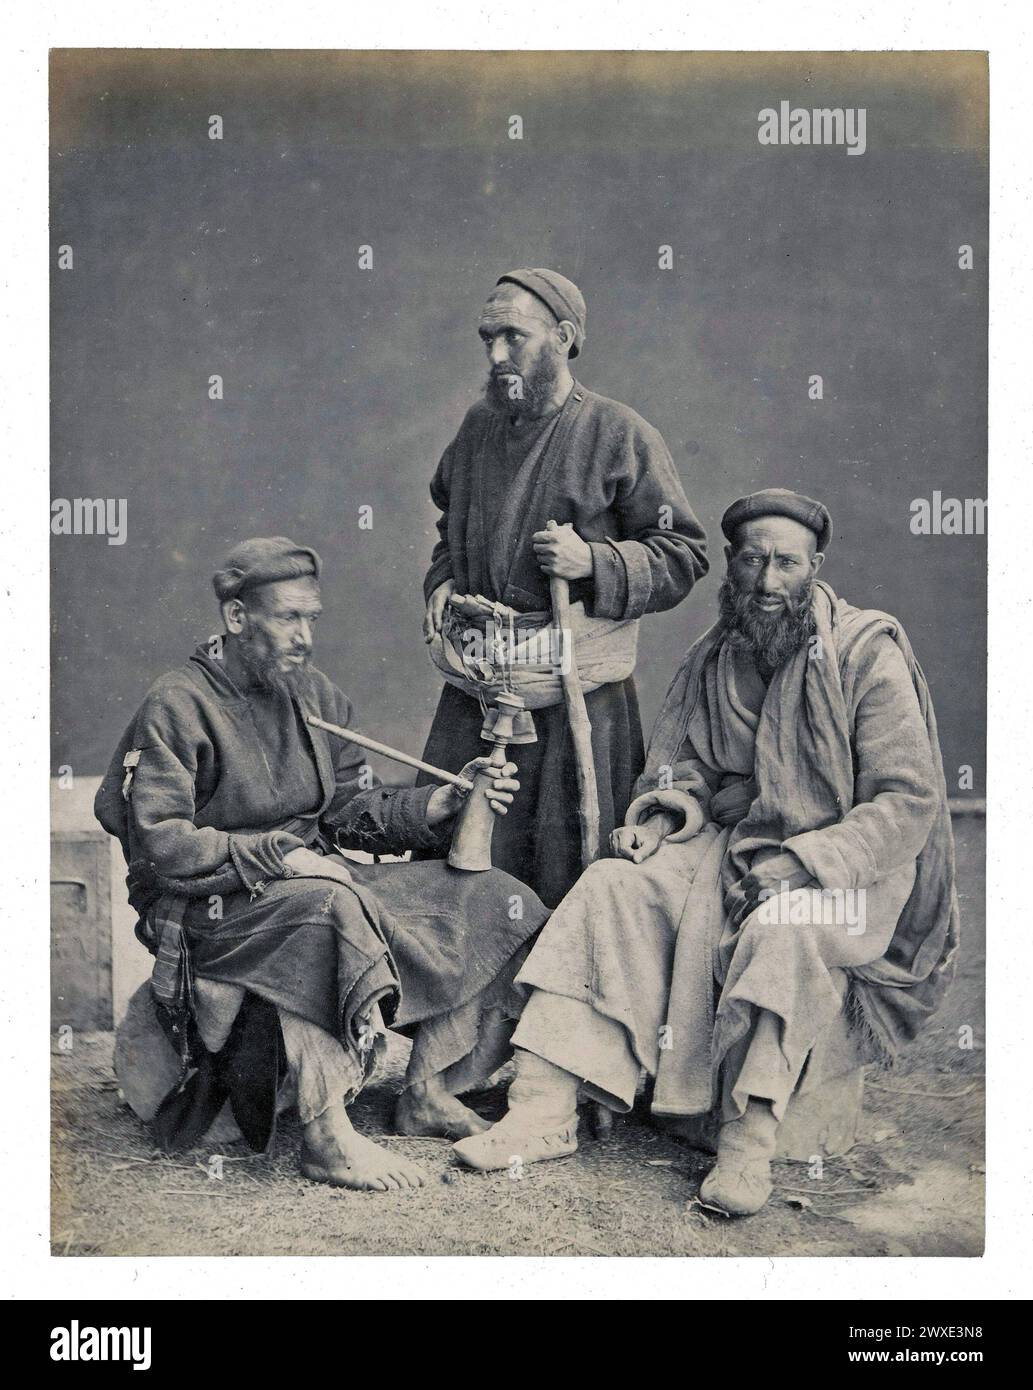 Antikes Foto. Gruppenporträt von drei Balti-Männern in Srinagar, Jammu & Kaschmir, Indien. Originaltitel: „Gruppe aus Ladock“, wahrscheinlich fotografiert von Frank Mason Good. Veröffentlicht von Francis Frith & Co. 1869 - 1875 Stockfoto